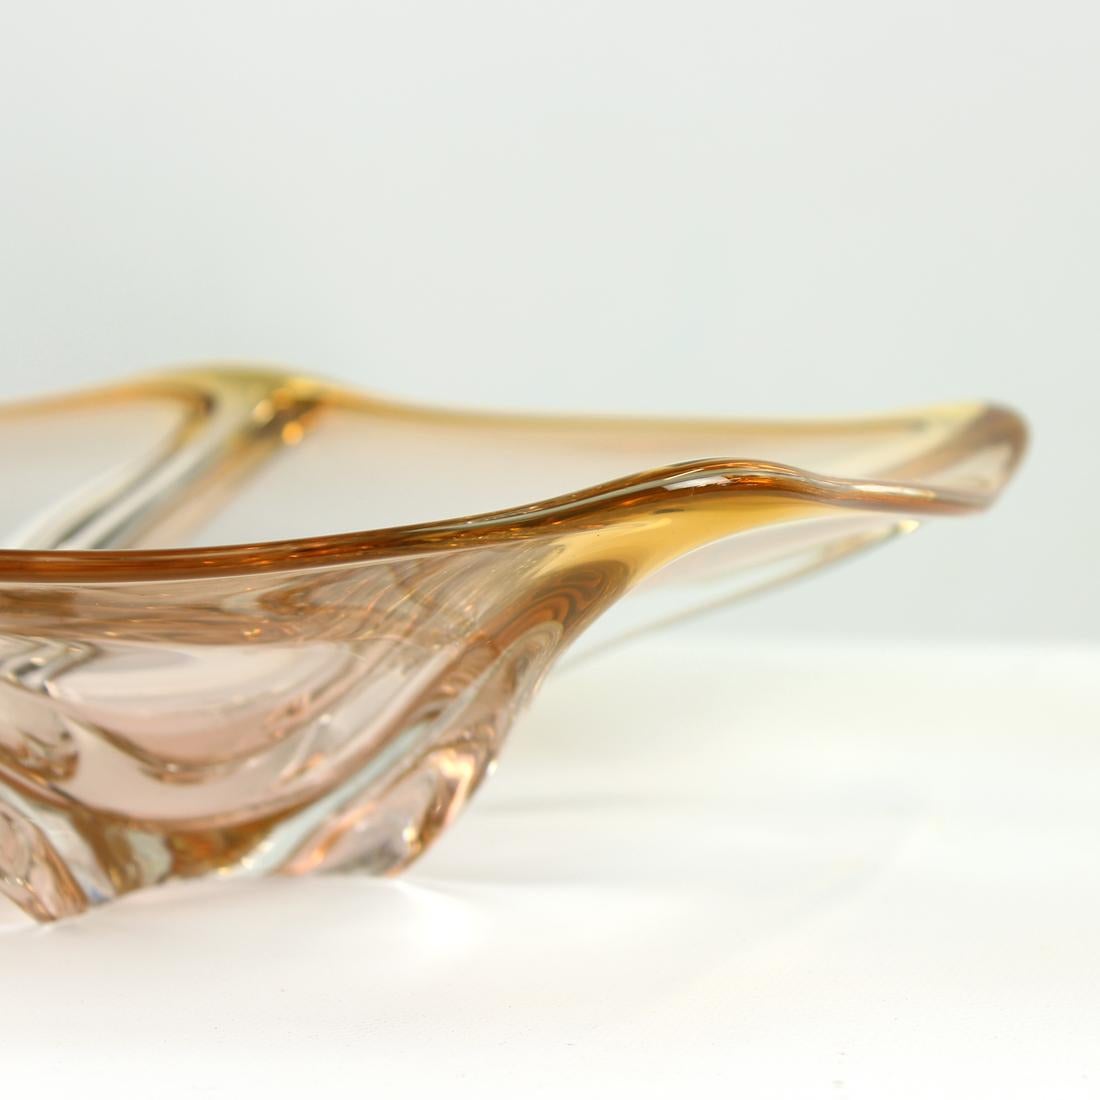 Art Glass Bowl By Frantisek Zemek For Sklarna Mstisov, 1960s For Sale 1